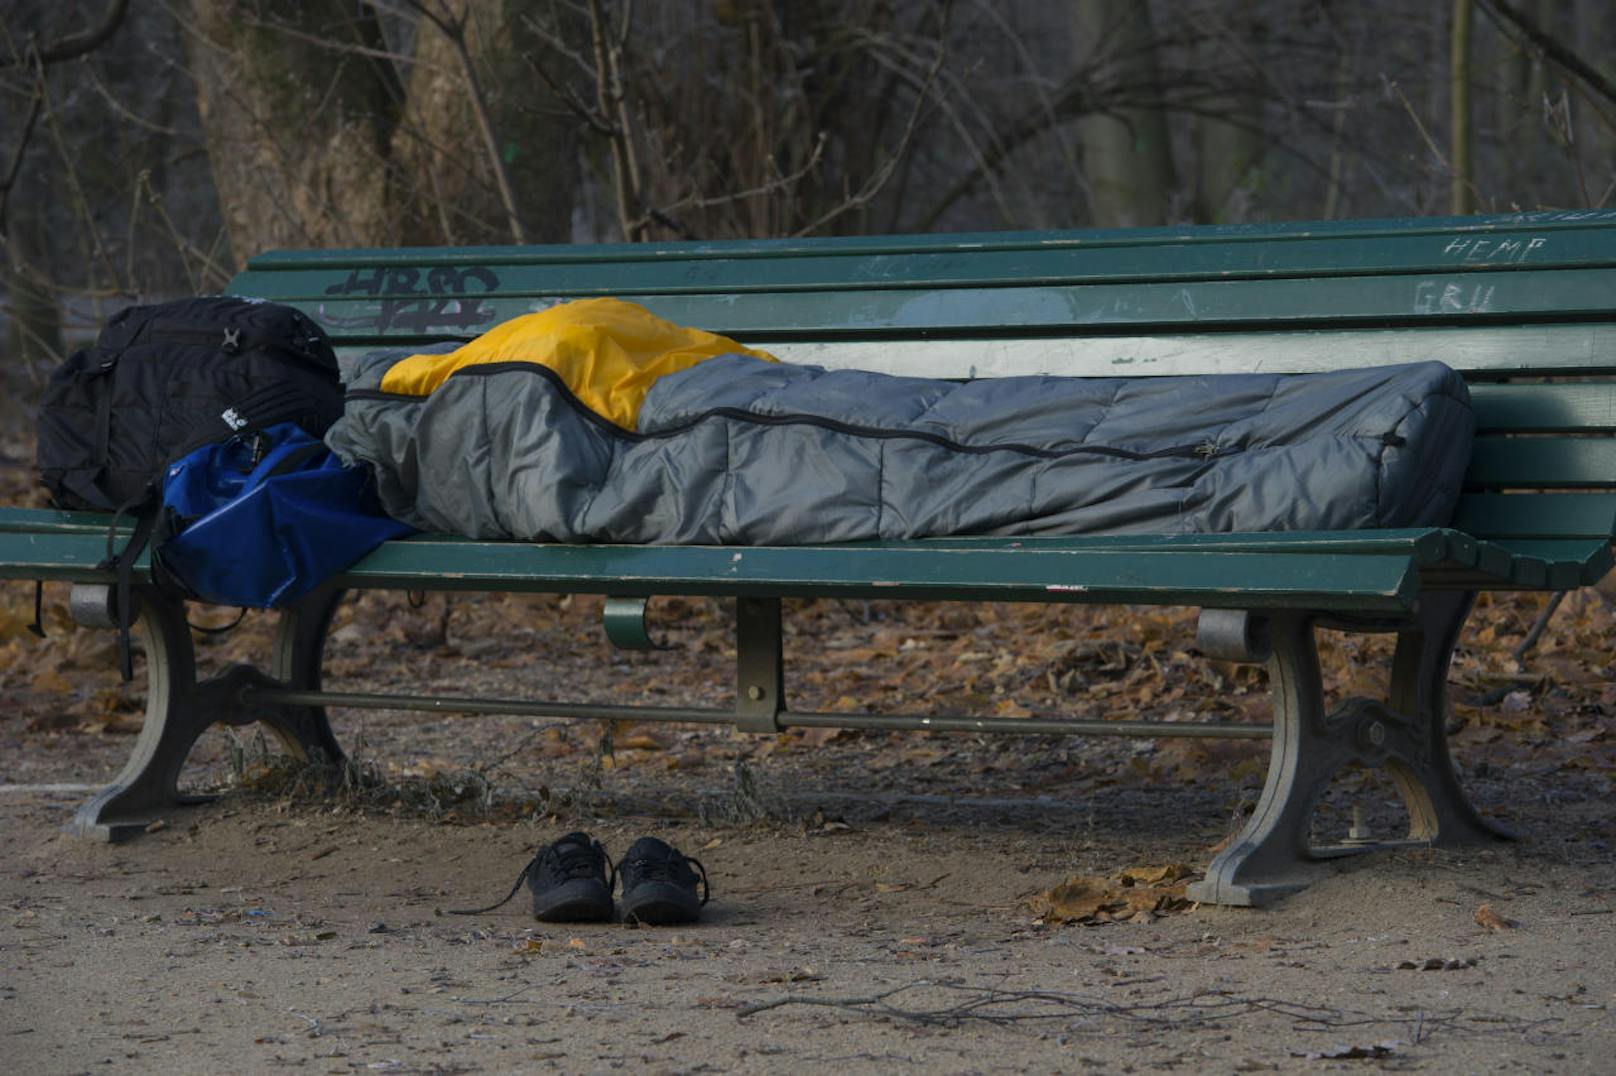 Die Polar-Kälte mit Temperaturen im zweistelligen Minusbereich kann für Obdachlose zur Lebensgefahr werden. Wer Obdachlose sieht, kann ganz einfach helfen...